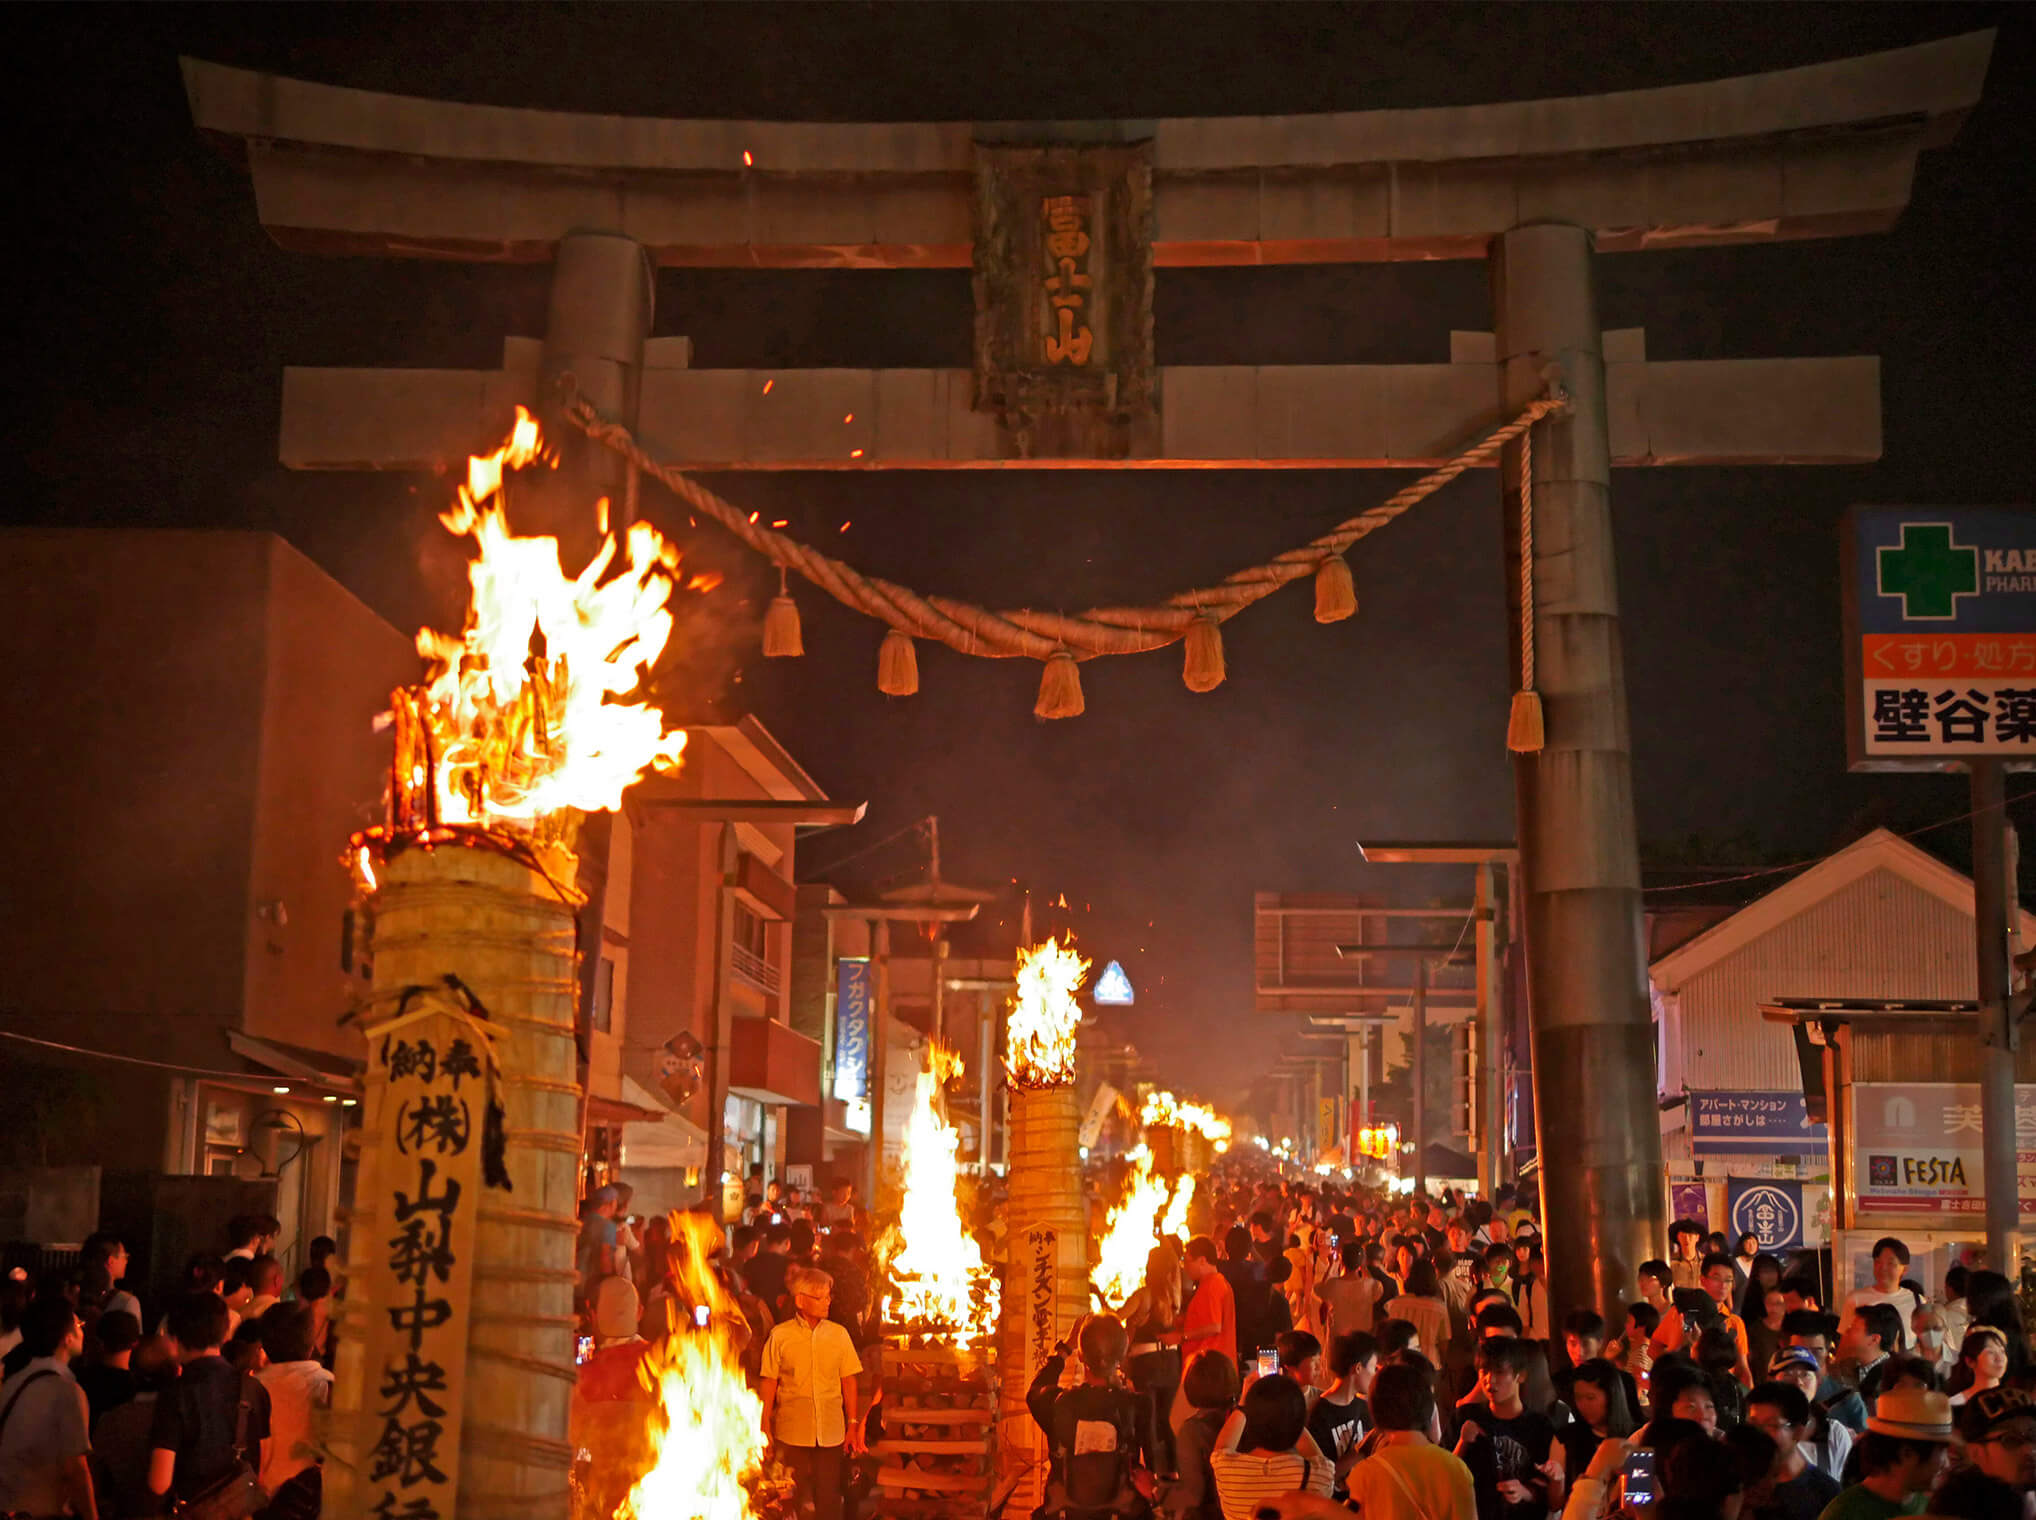 吉田の火祭りのイメージ画像が表示されています。